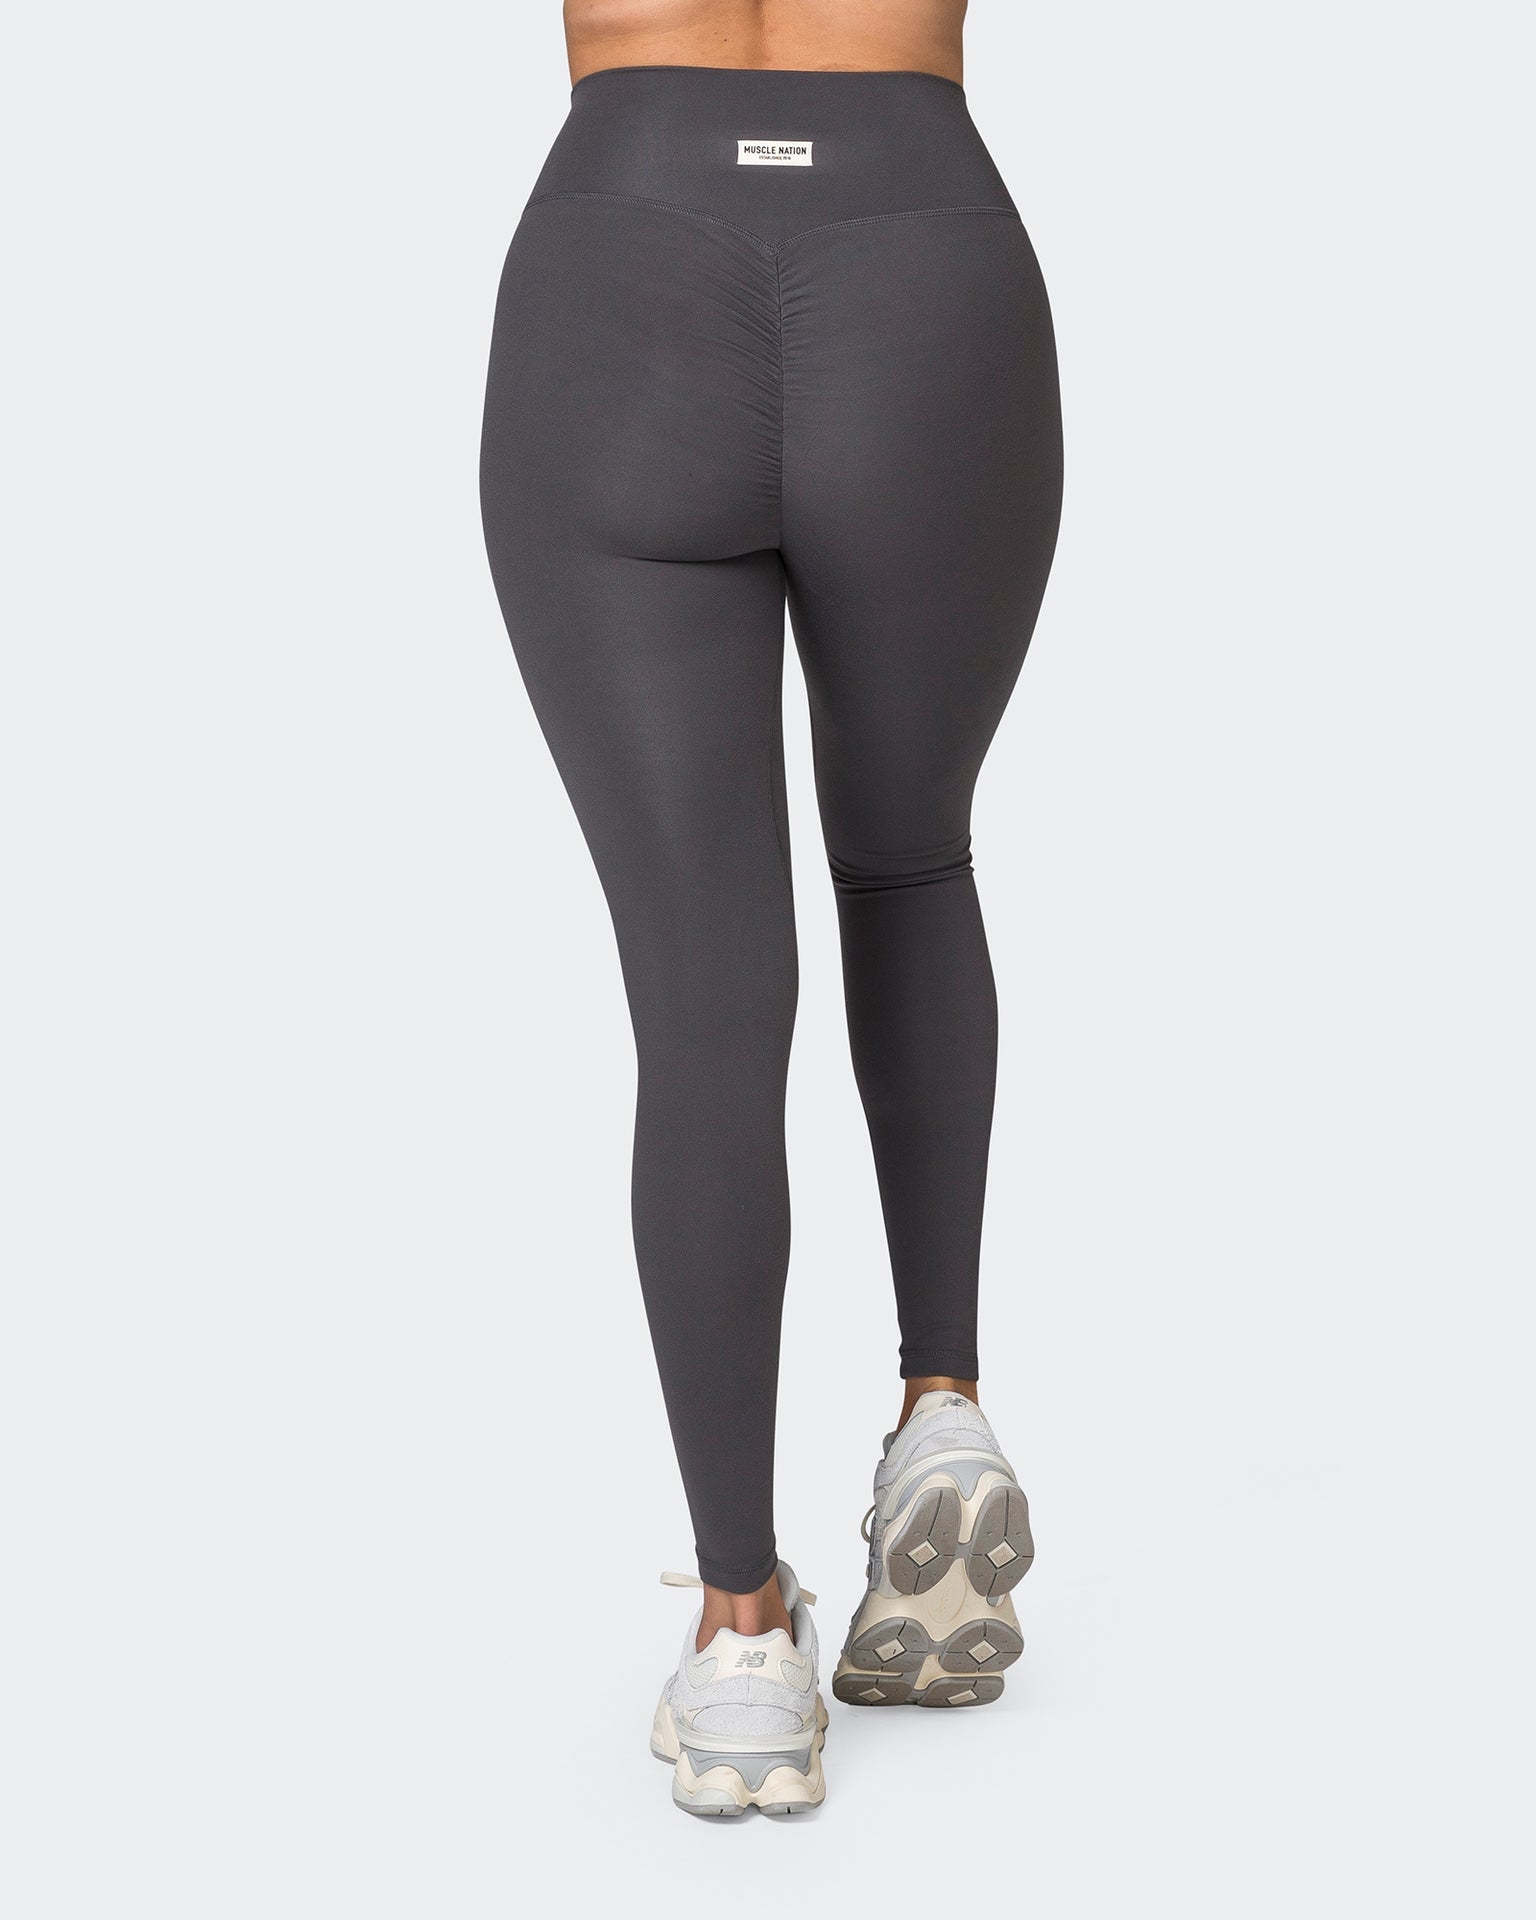 https://www.beactivewear.com.au/cdn/shop/files/muscle-nation-gym-leggings-game-changer-scrunch-full-length-leggings-phantom-38003796541609_1536x1920.jpg?v=1686368021